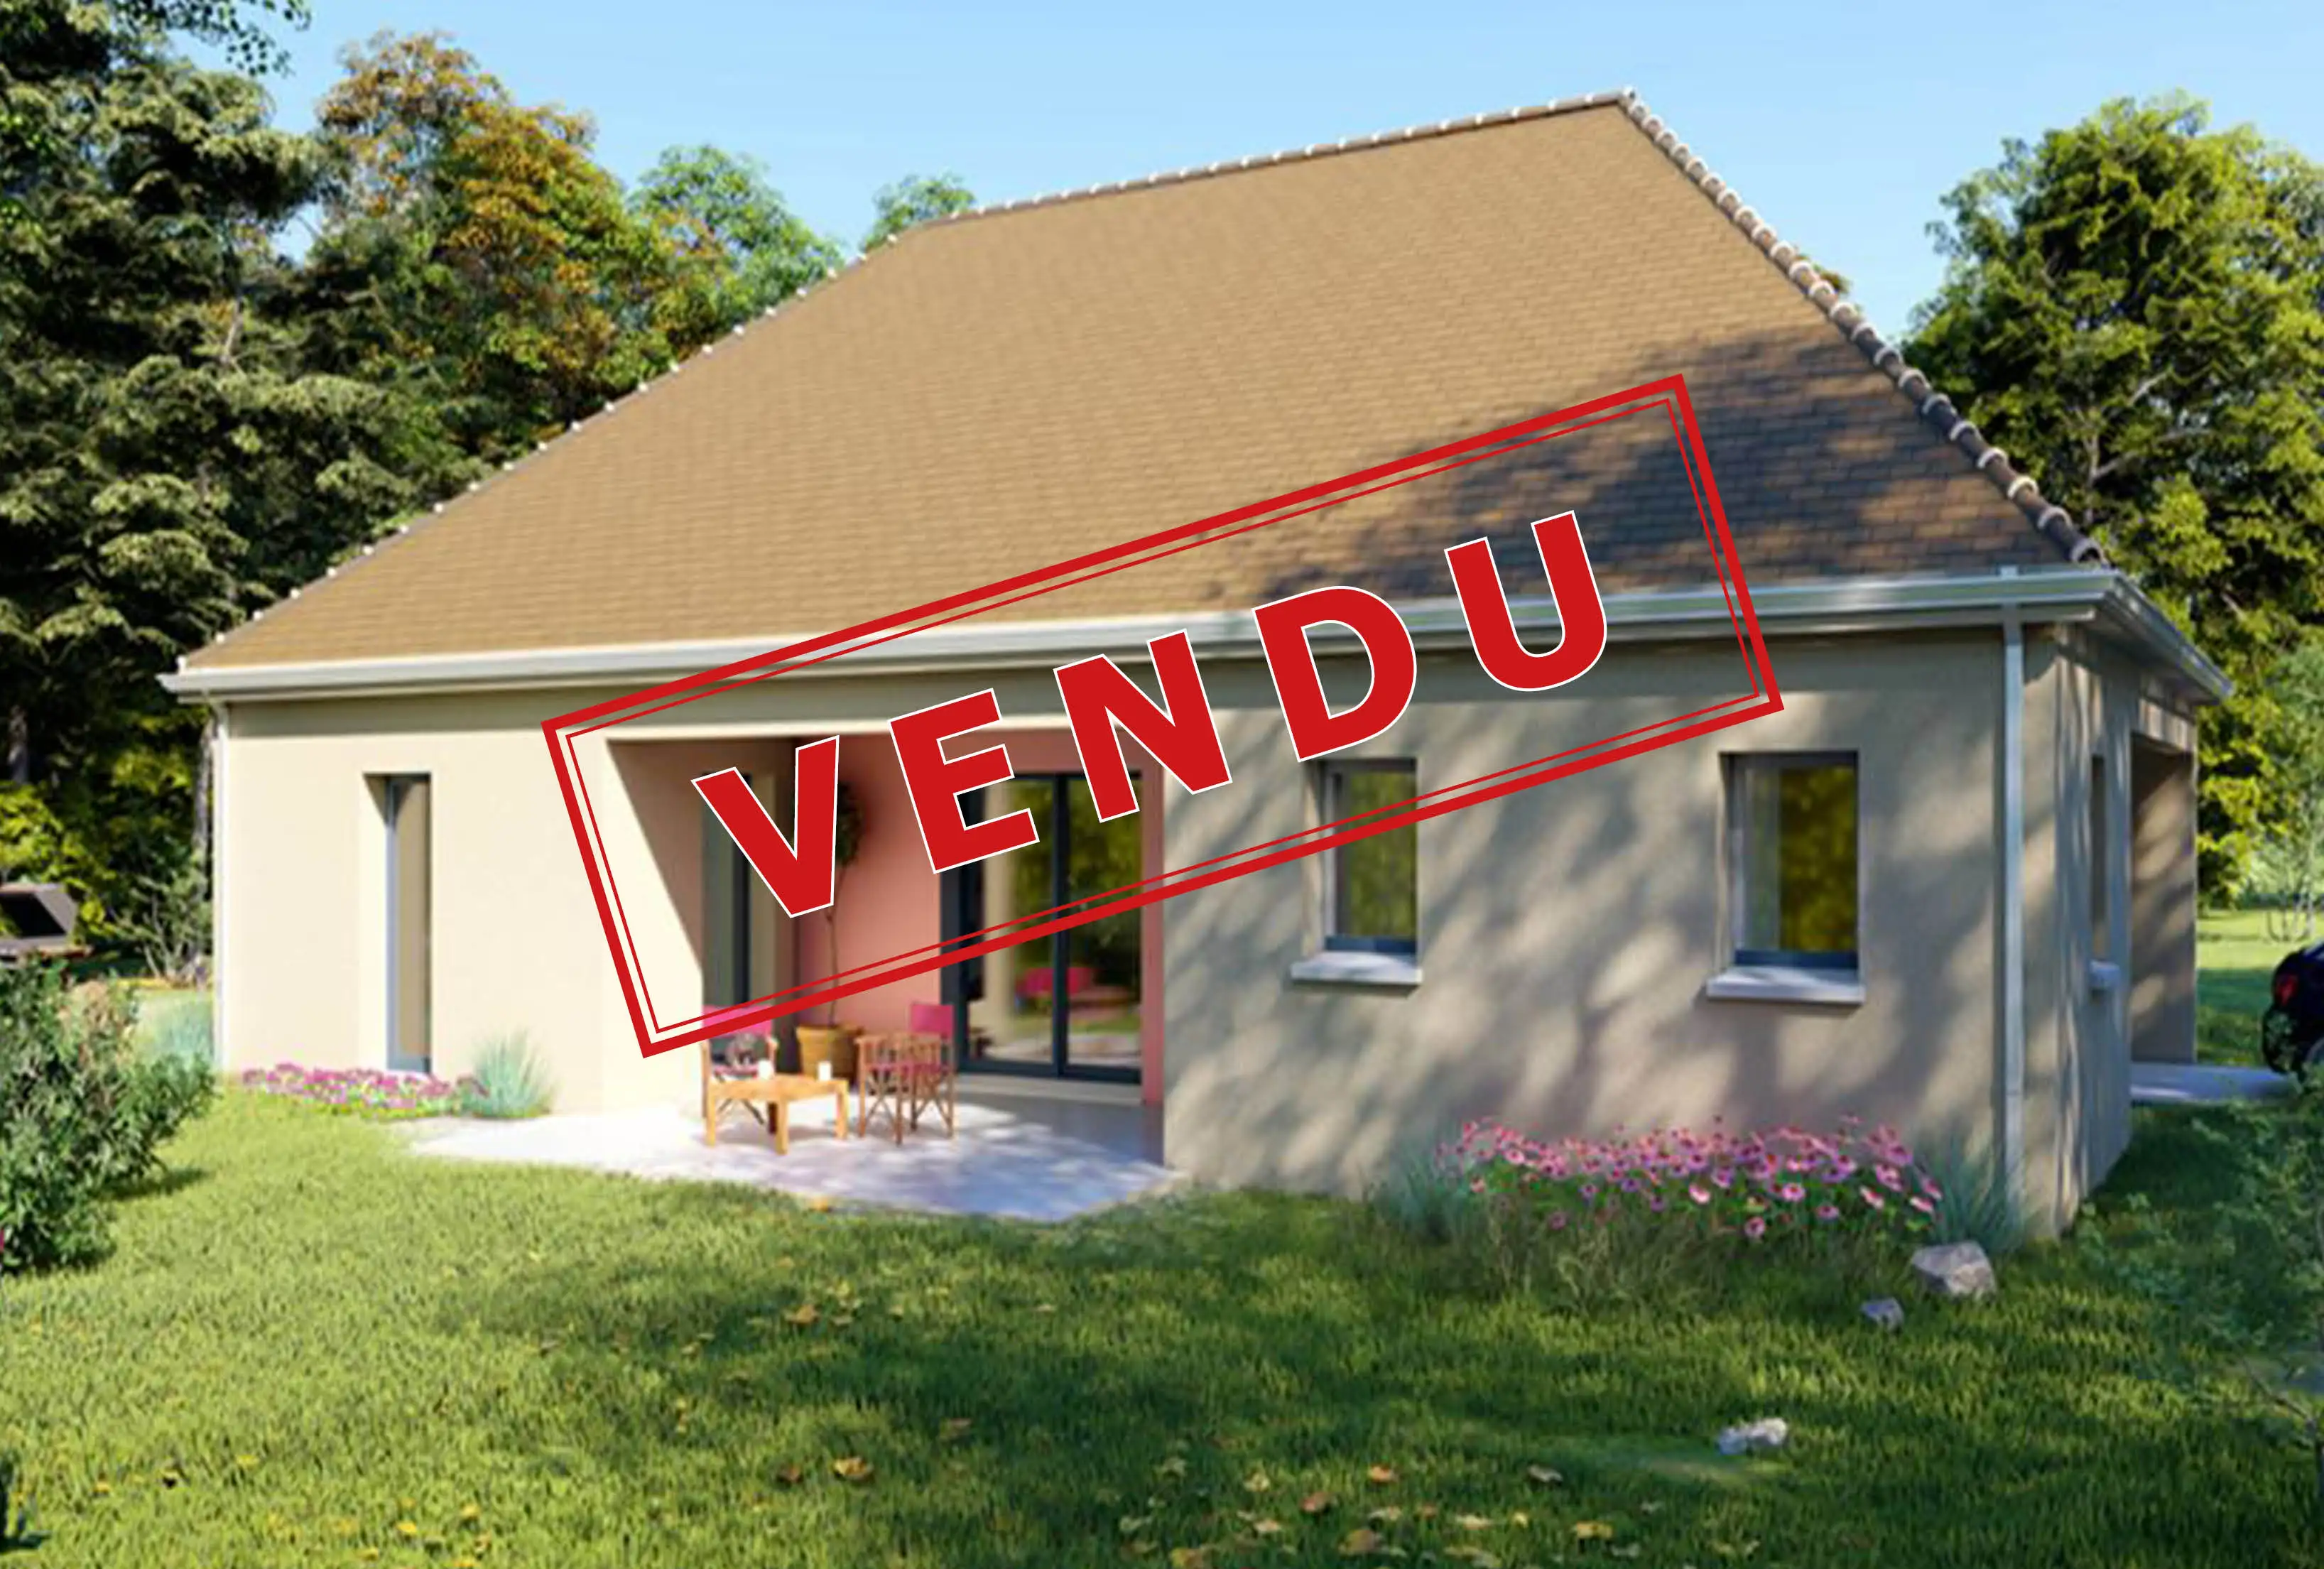 Image exclus Exclusivité immobilière de 664 m² à Courtois-sur-Yonne (89)